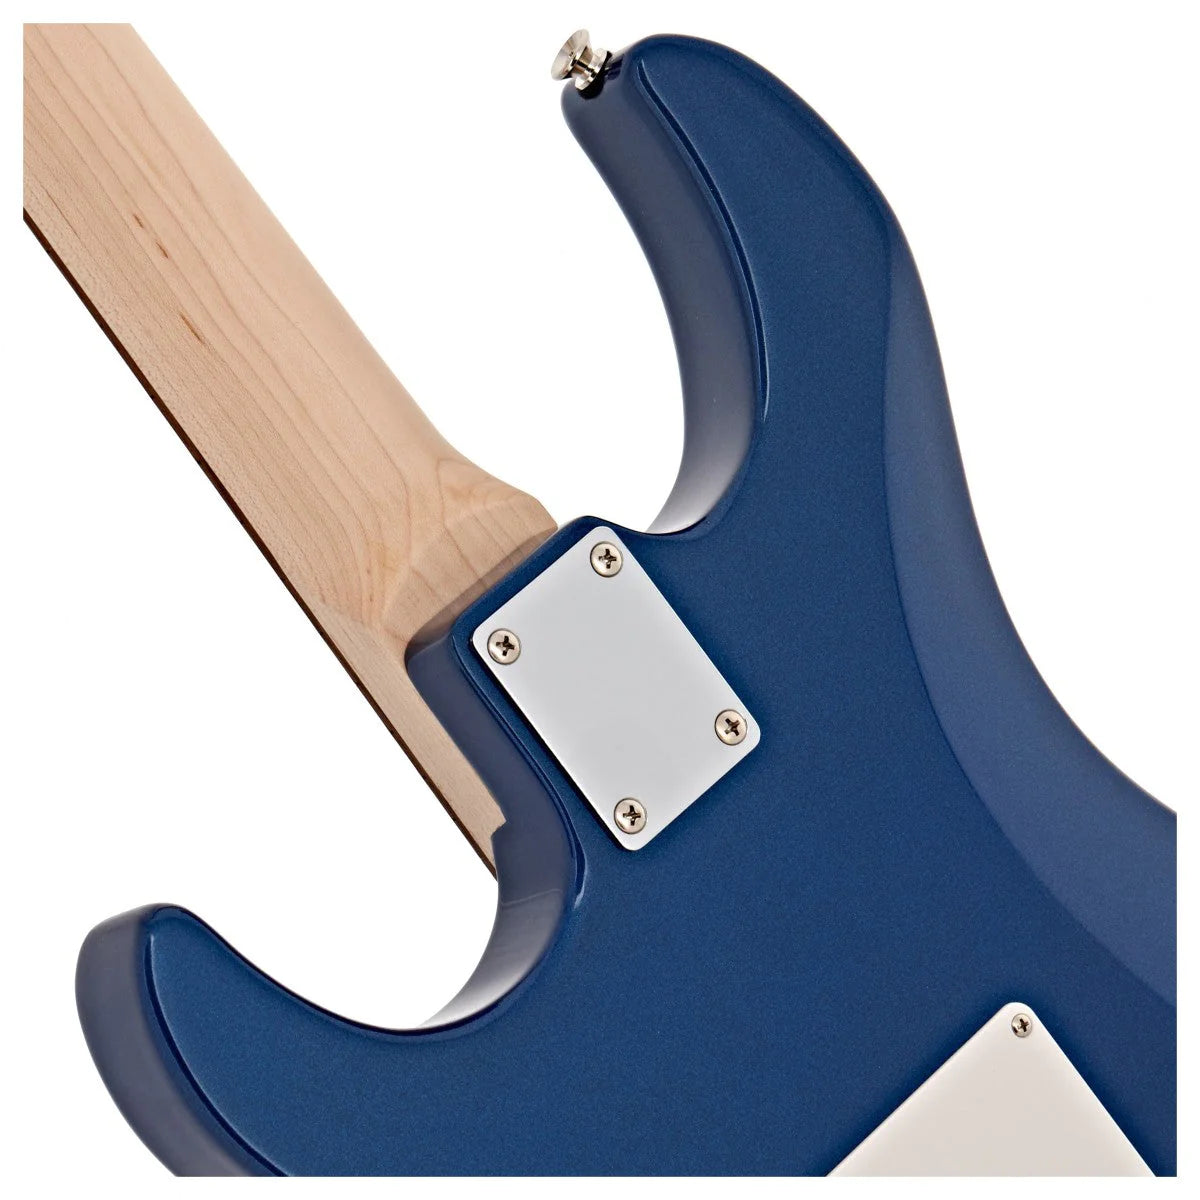 Đàn Guitar Điện Yamaha Pacifica PAC012 Blue